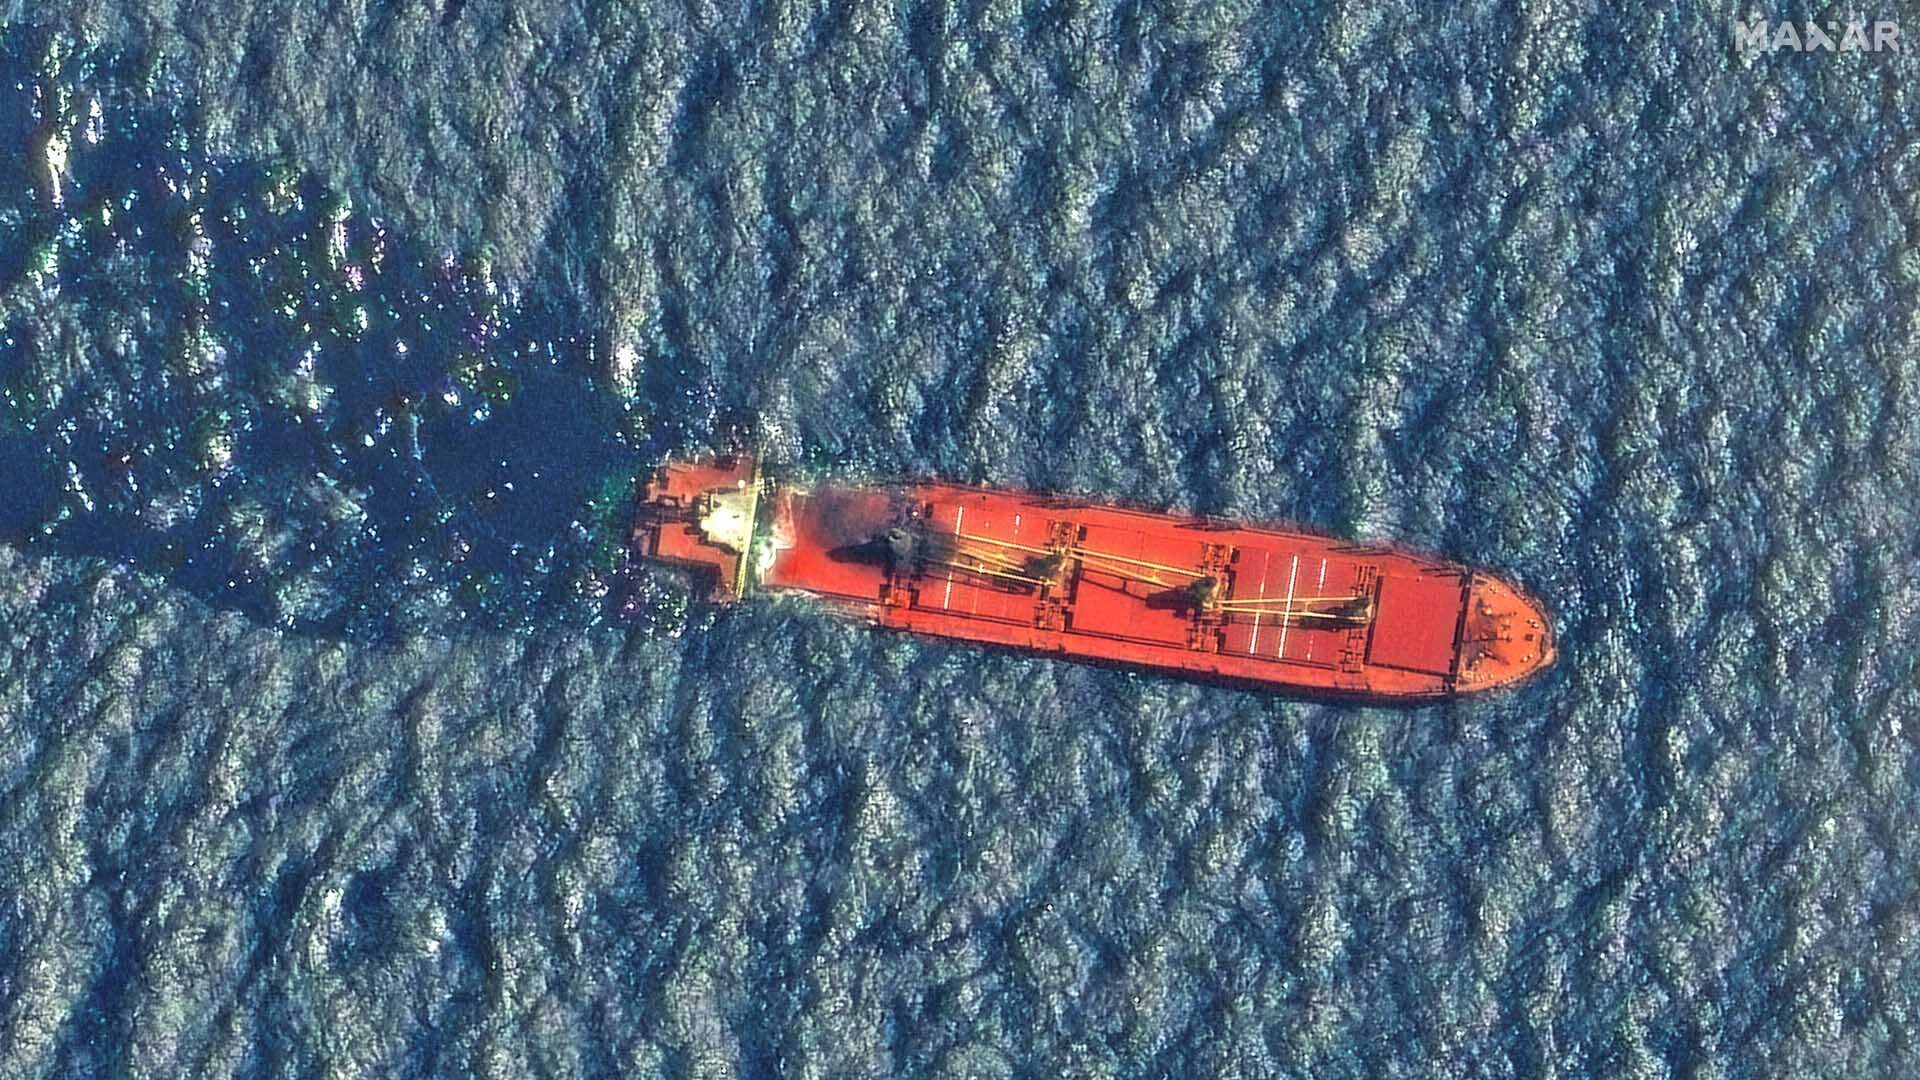 เรือสินค้าบริษัทอังกฤษ “จมทะเลแดงลำแรก” หลังฮูตียิงมิสไซล์เมื่อ 2 สัปดาห์ก่อน